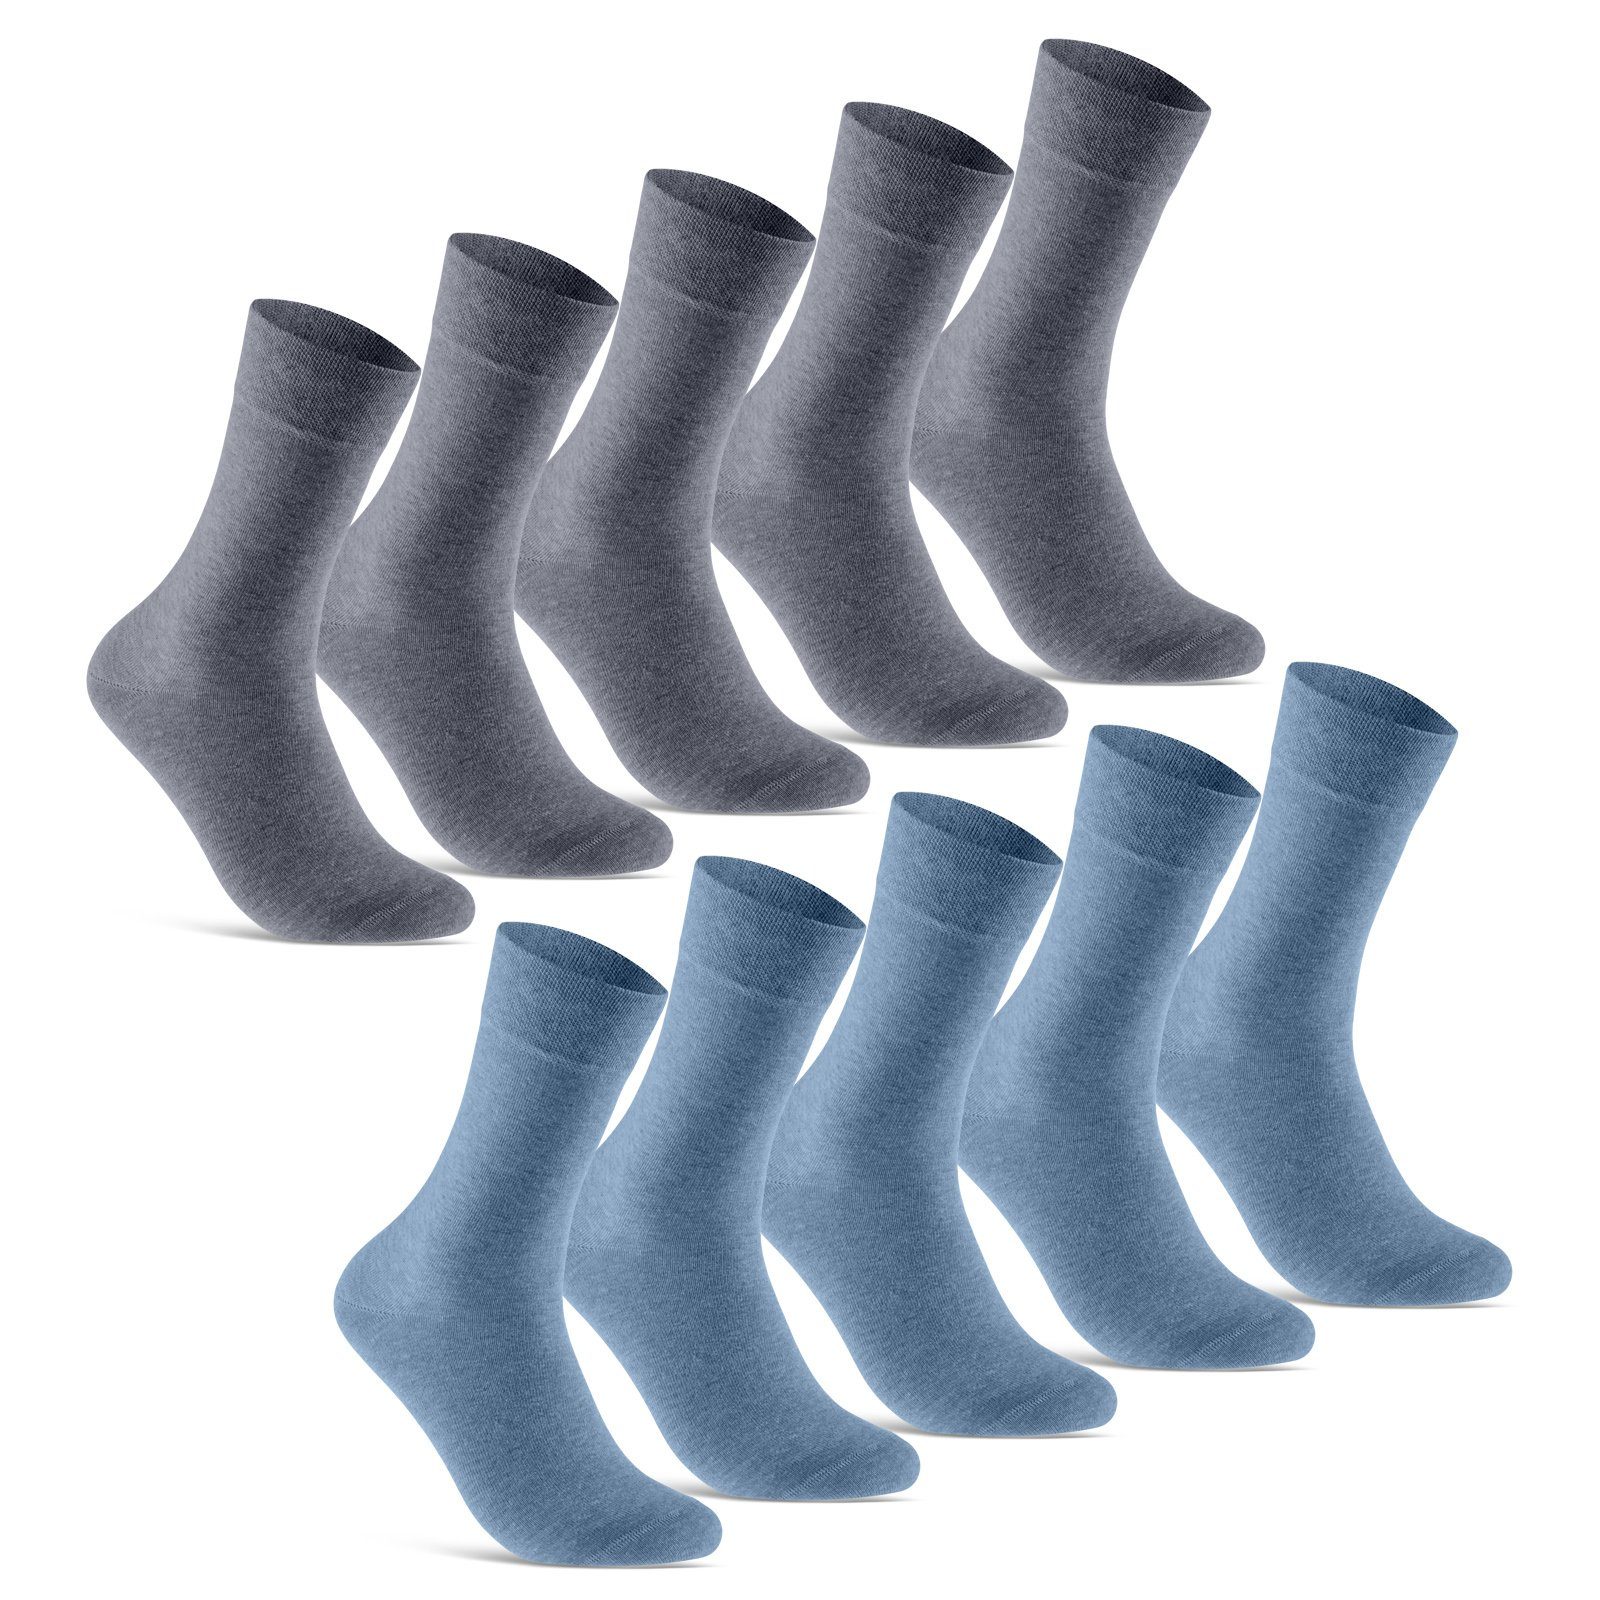 sockenkauf24 Socken 10 Paar Premium Socken Herren & Damen Komfort Business-Socken (Jeans, 10-Paar, 35-38) aus gekämmter Baumwolle mit Pique-Bund (Exclusive Line) - 70101T WP